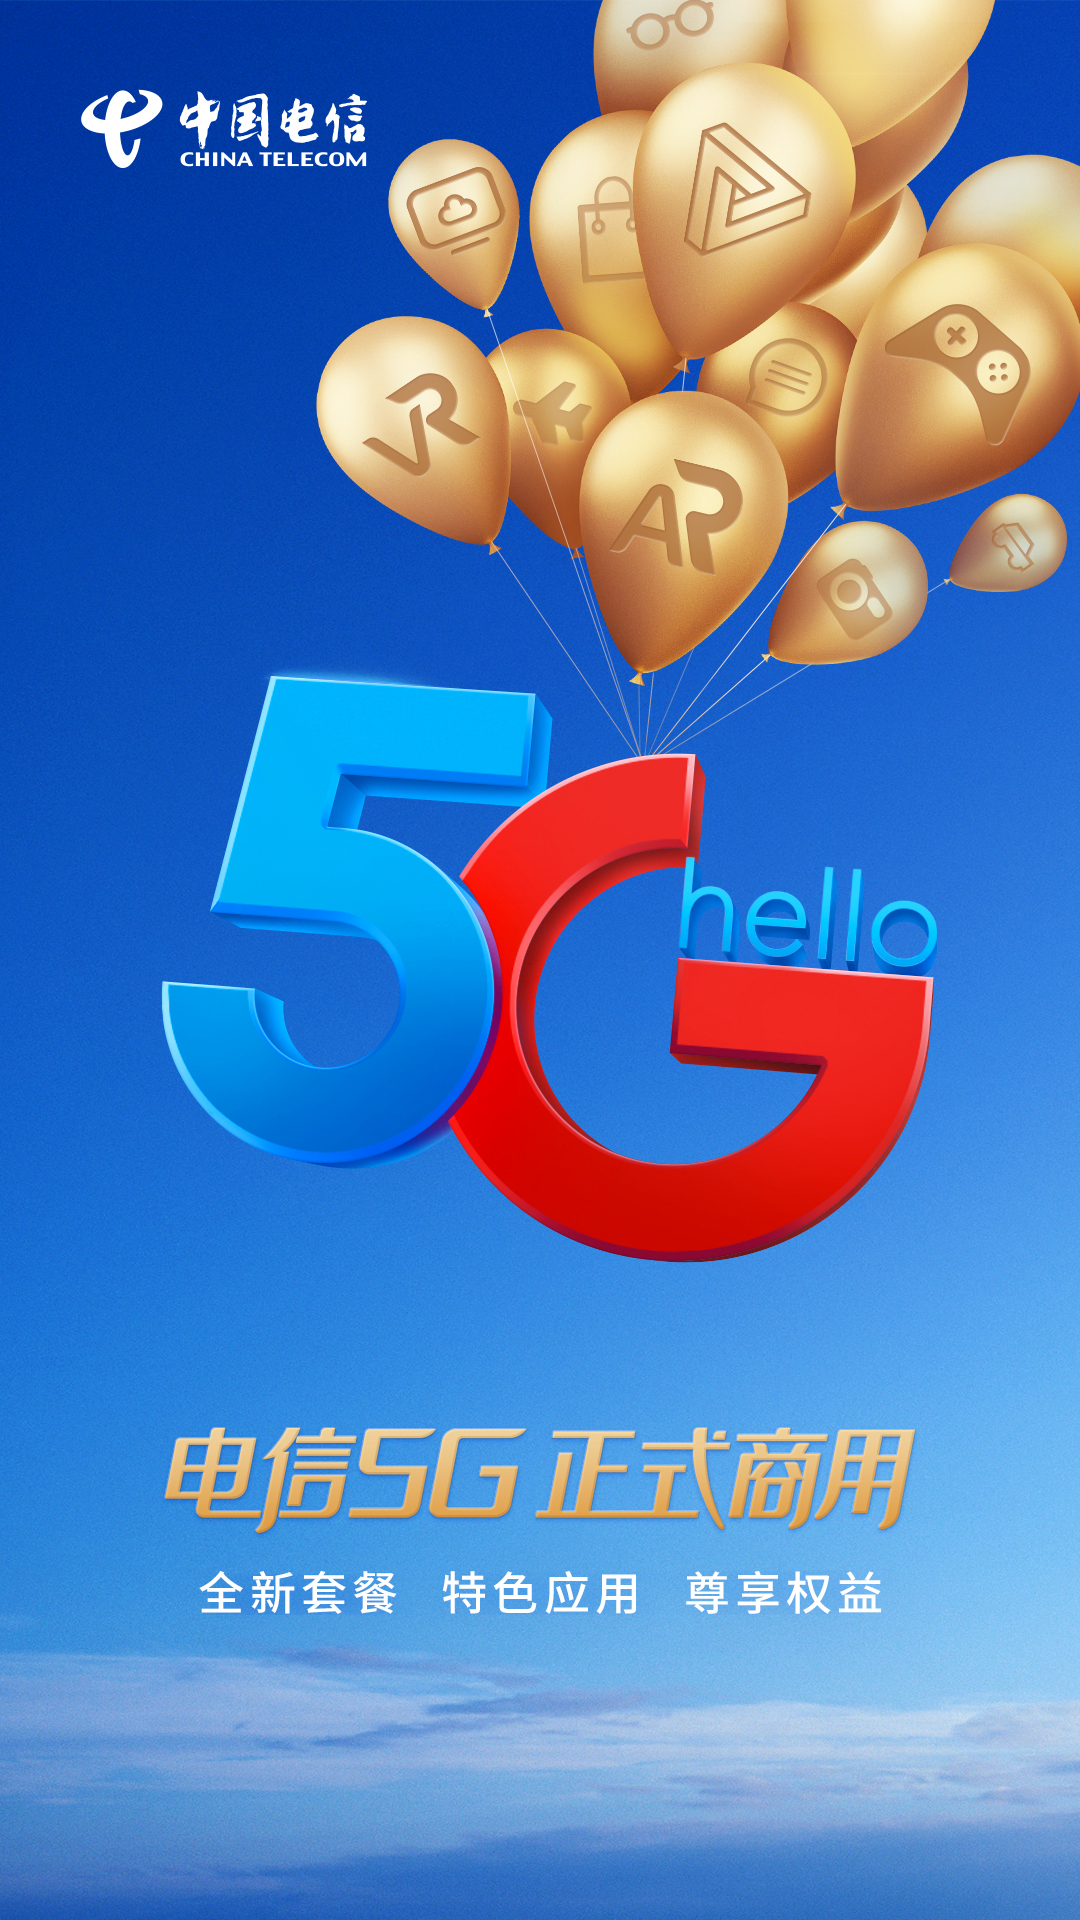 陕西首位5g双千兆用户现身电信!5g时代正式开启